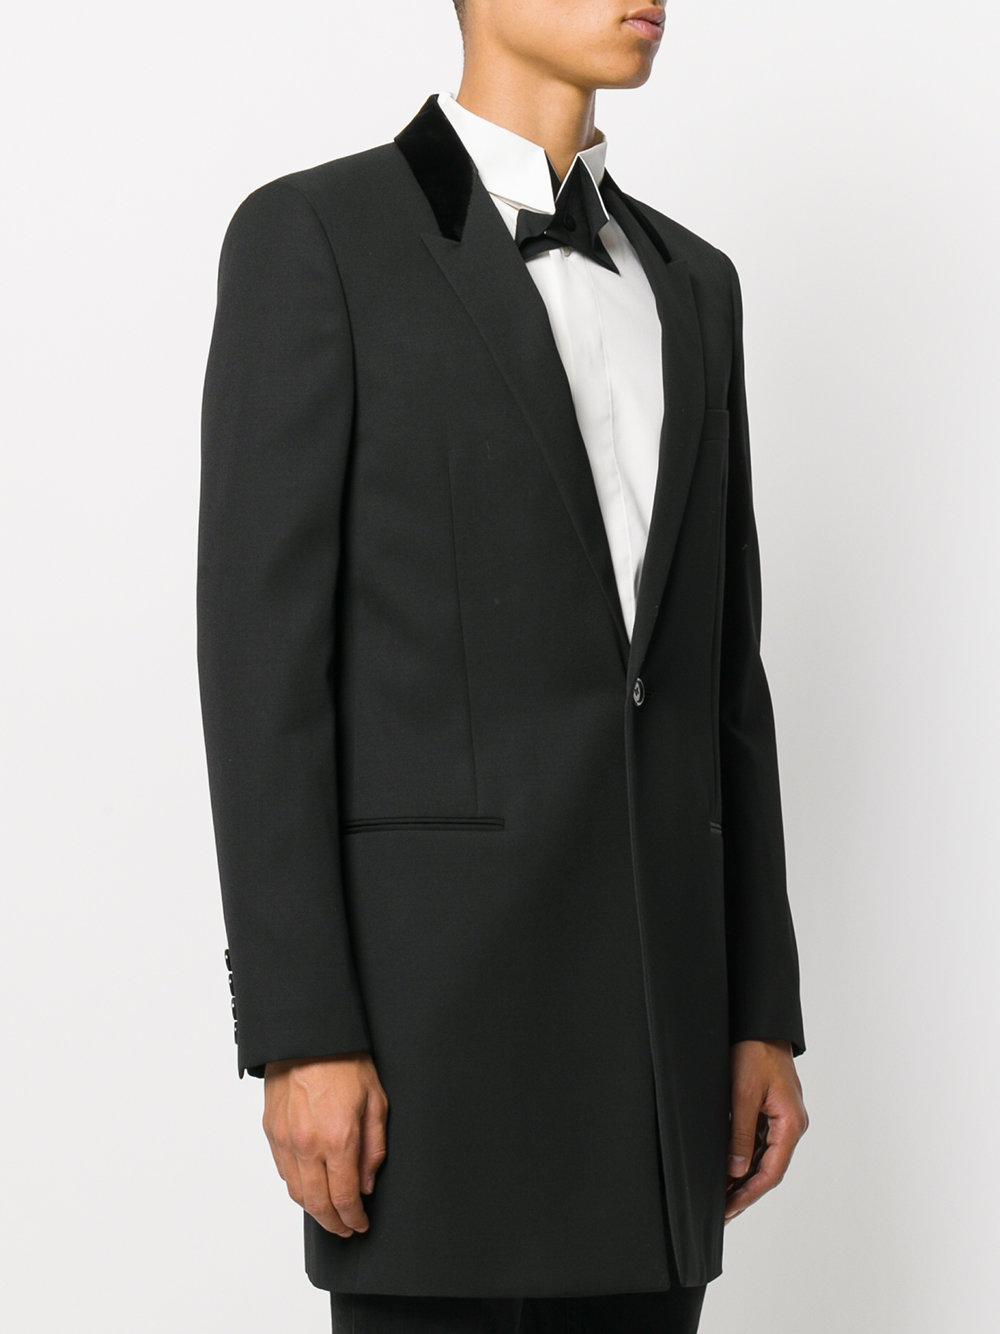 Saint Laurent Velvet Collar Chesterfield Coat in Black for Men - Lyst